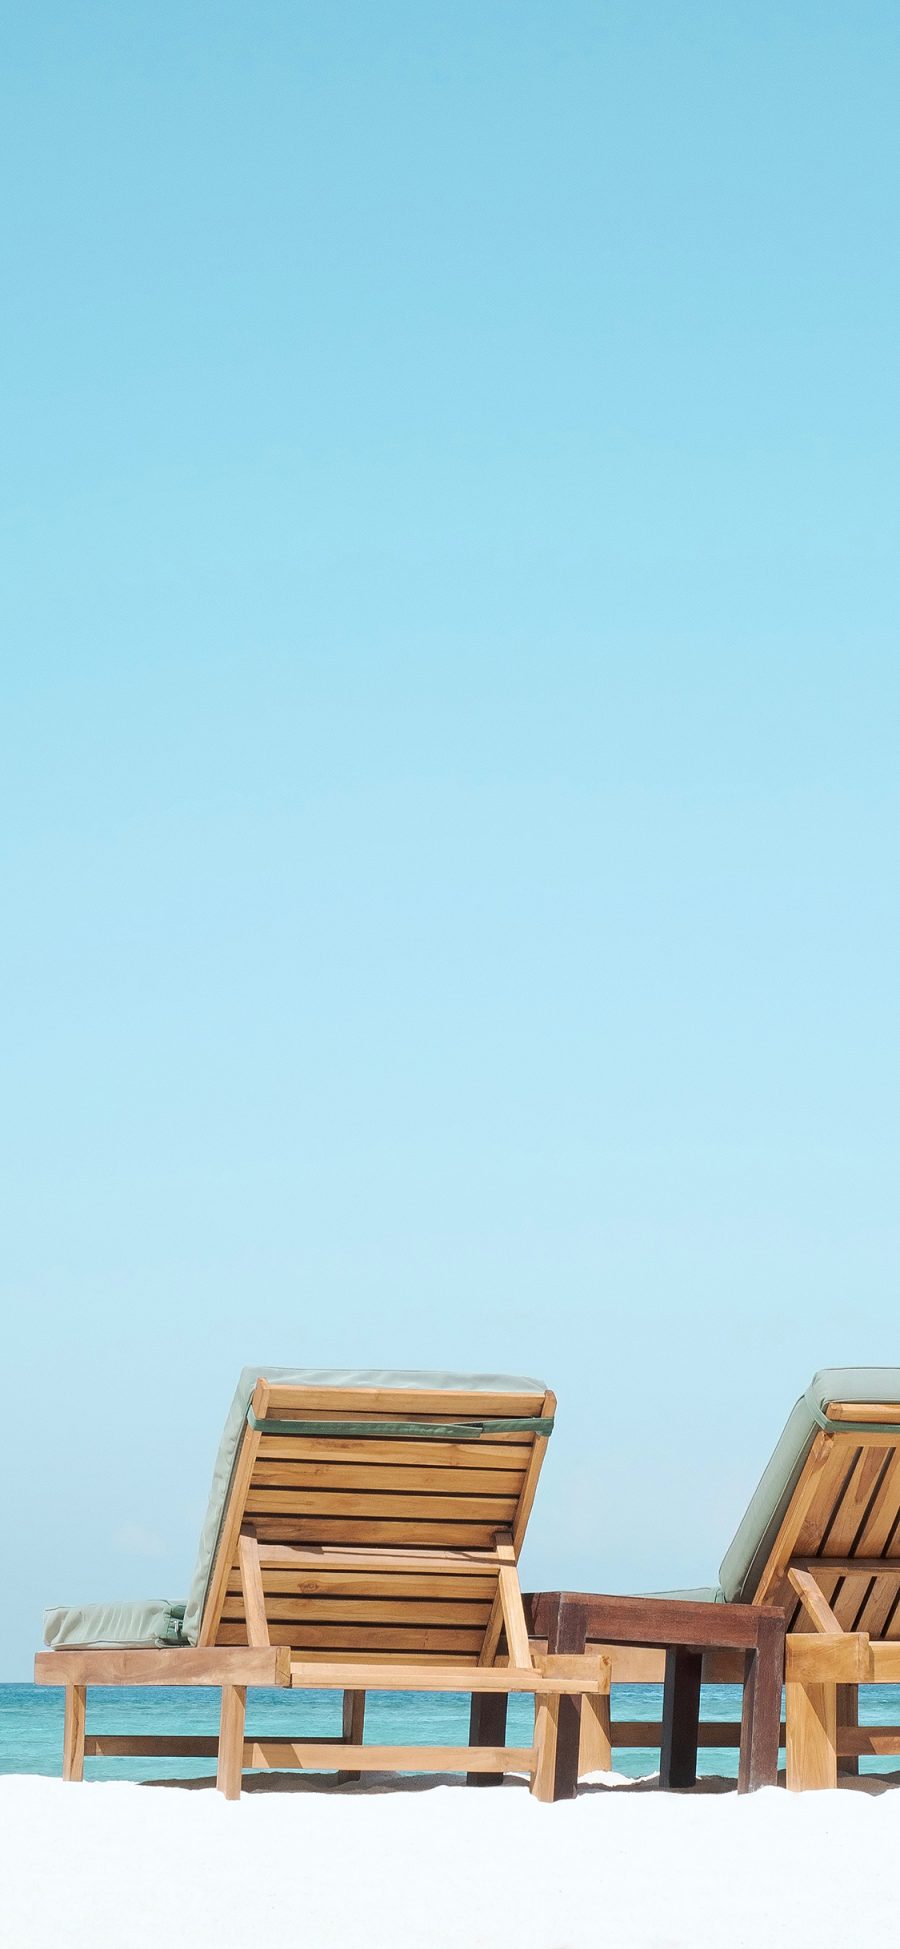 [2436×1125]家具 躺椅 沙滩 蔚蓝 海边 苹果手机壁纸图片